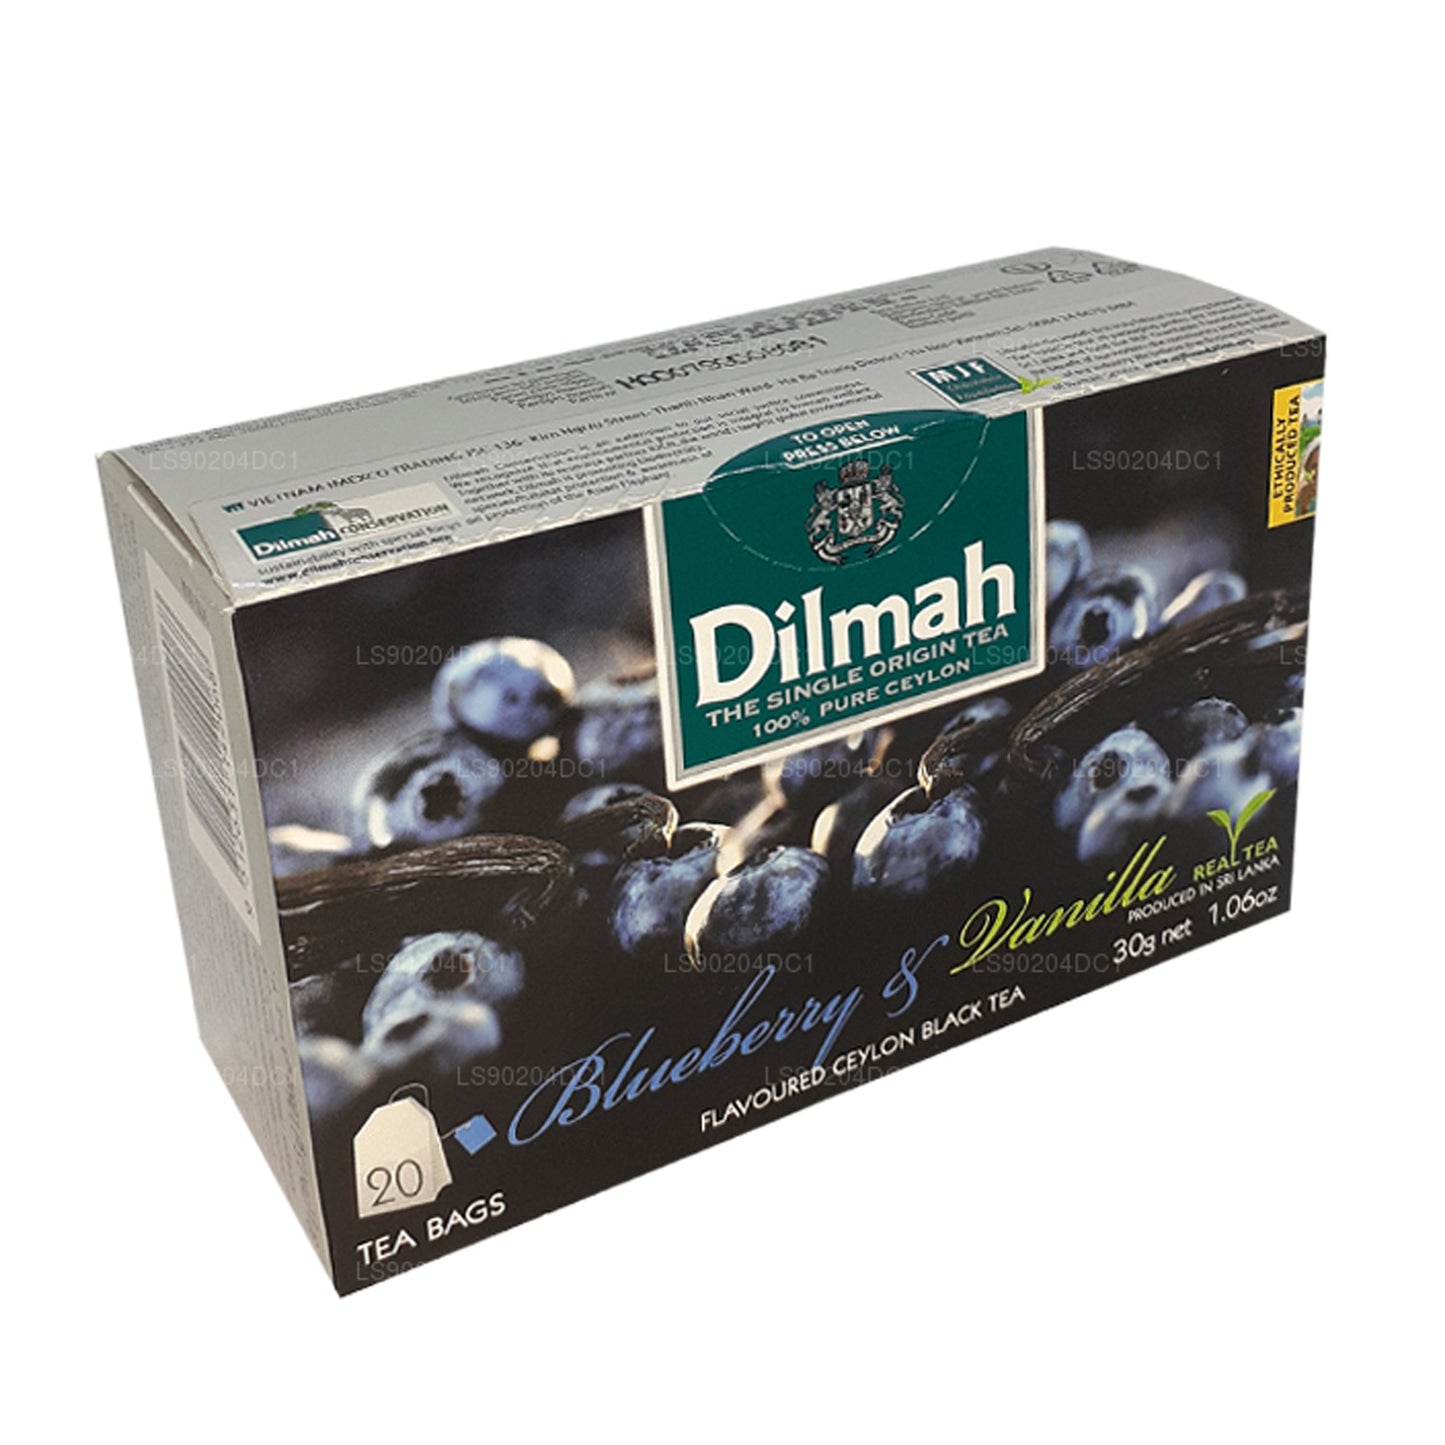 Dilmah blåbær og vanille aromatiseret te (40 g) 20 teposer